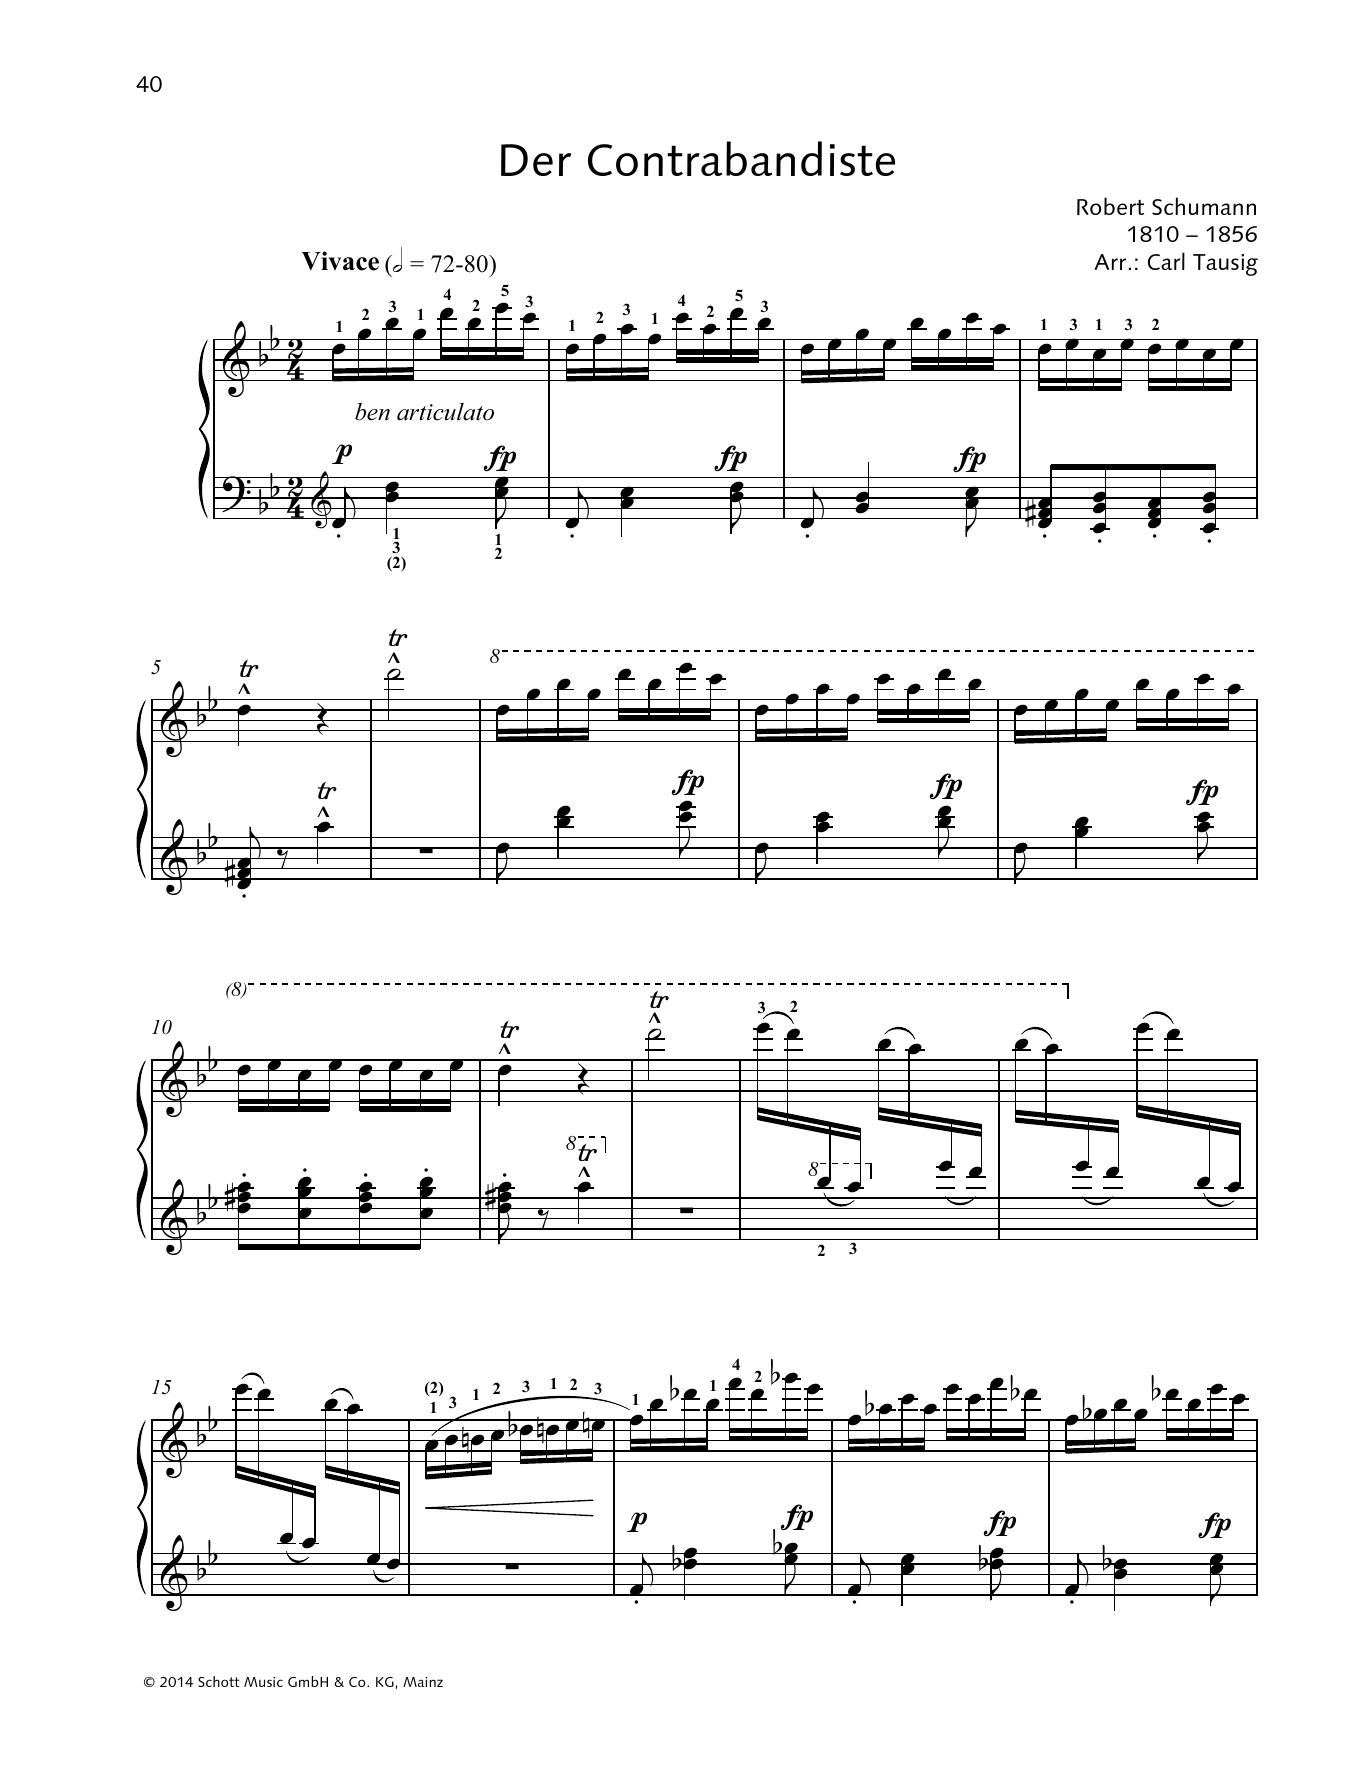 Download Robert Schumann Der Contrabandiste Sheet Music